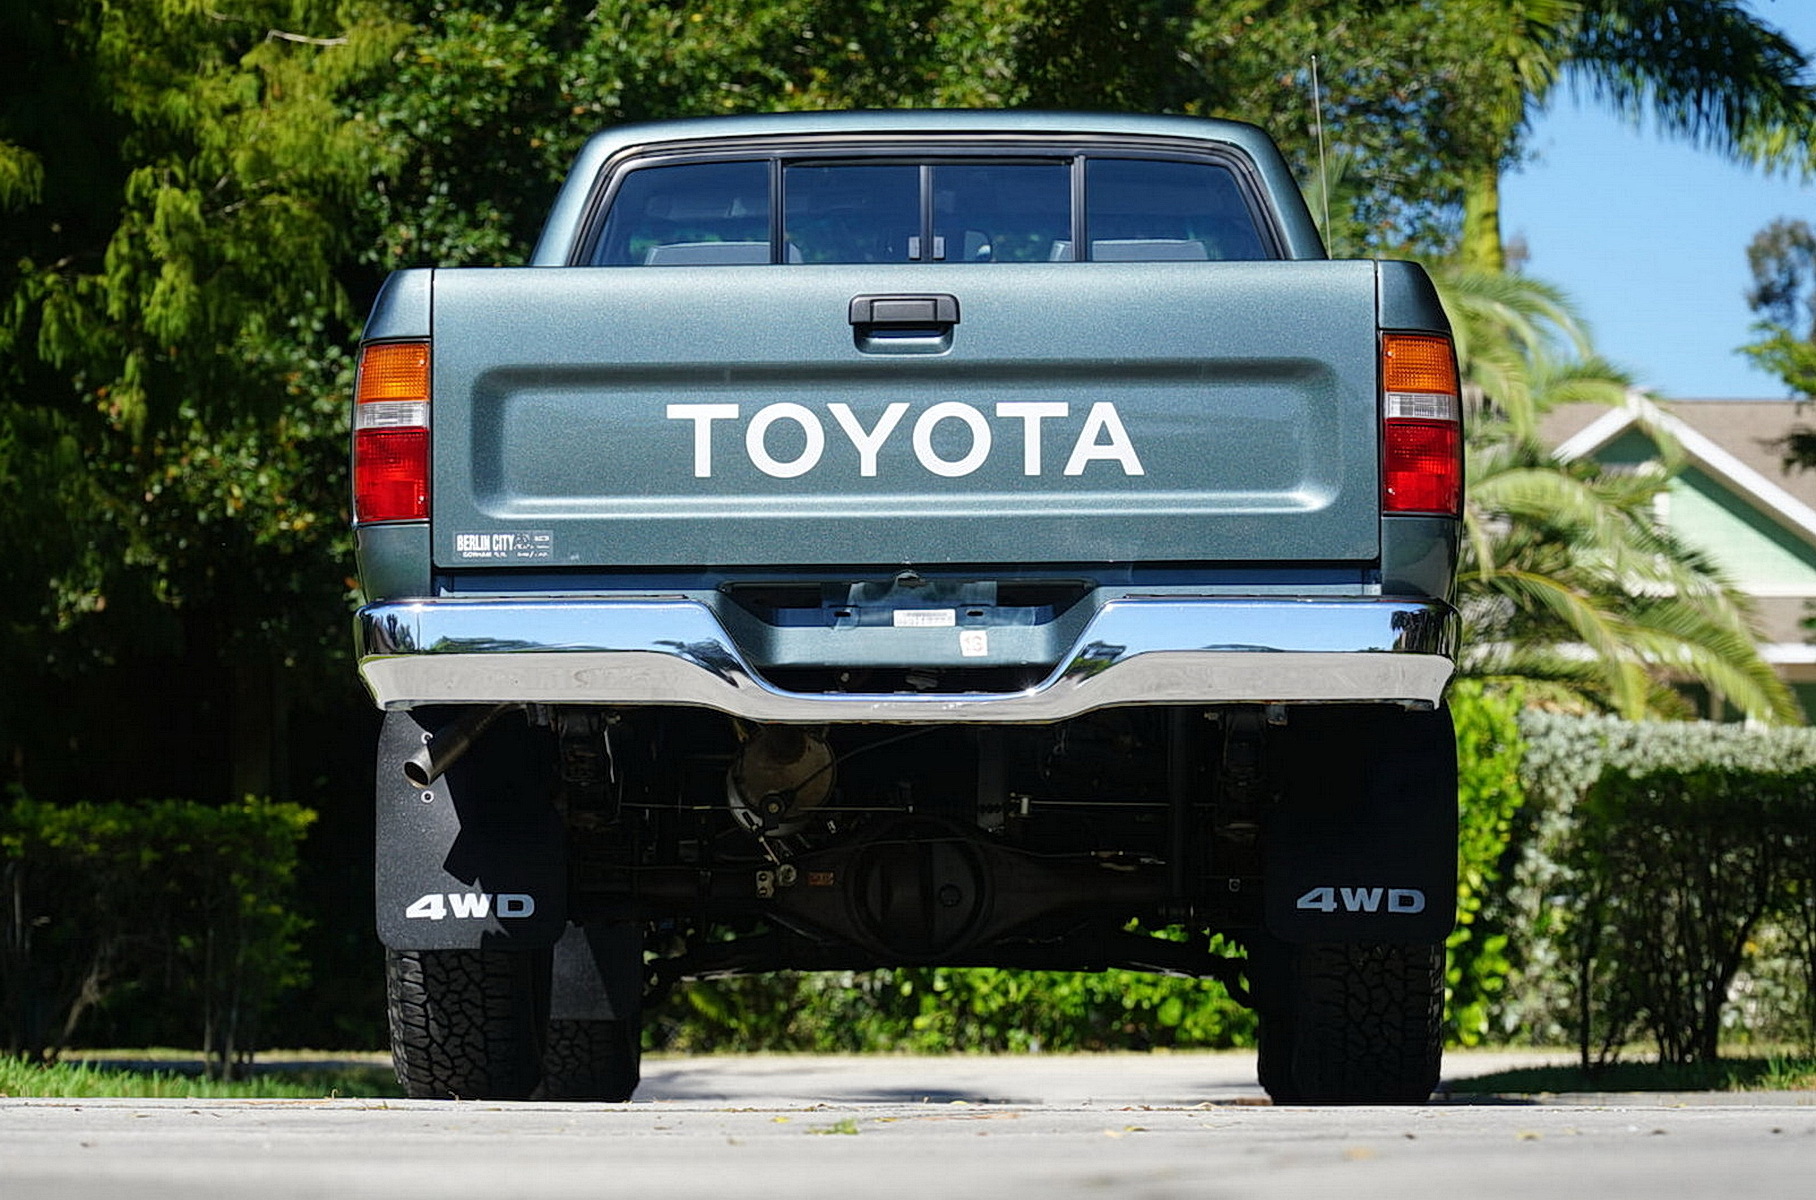 На продажу выставили пикап Toyota, простоявший в гараже 28 лет